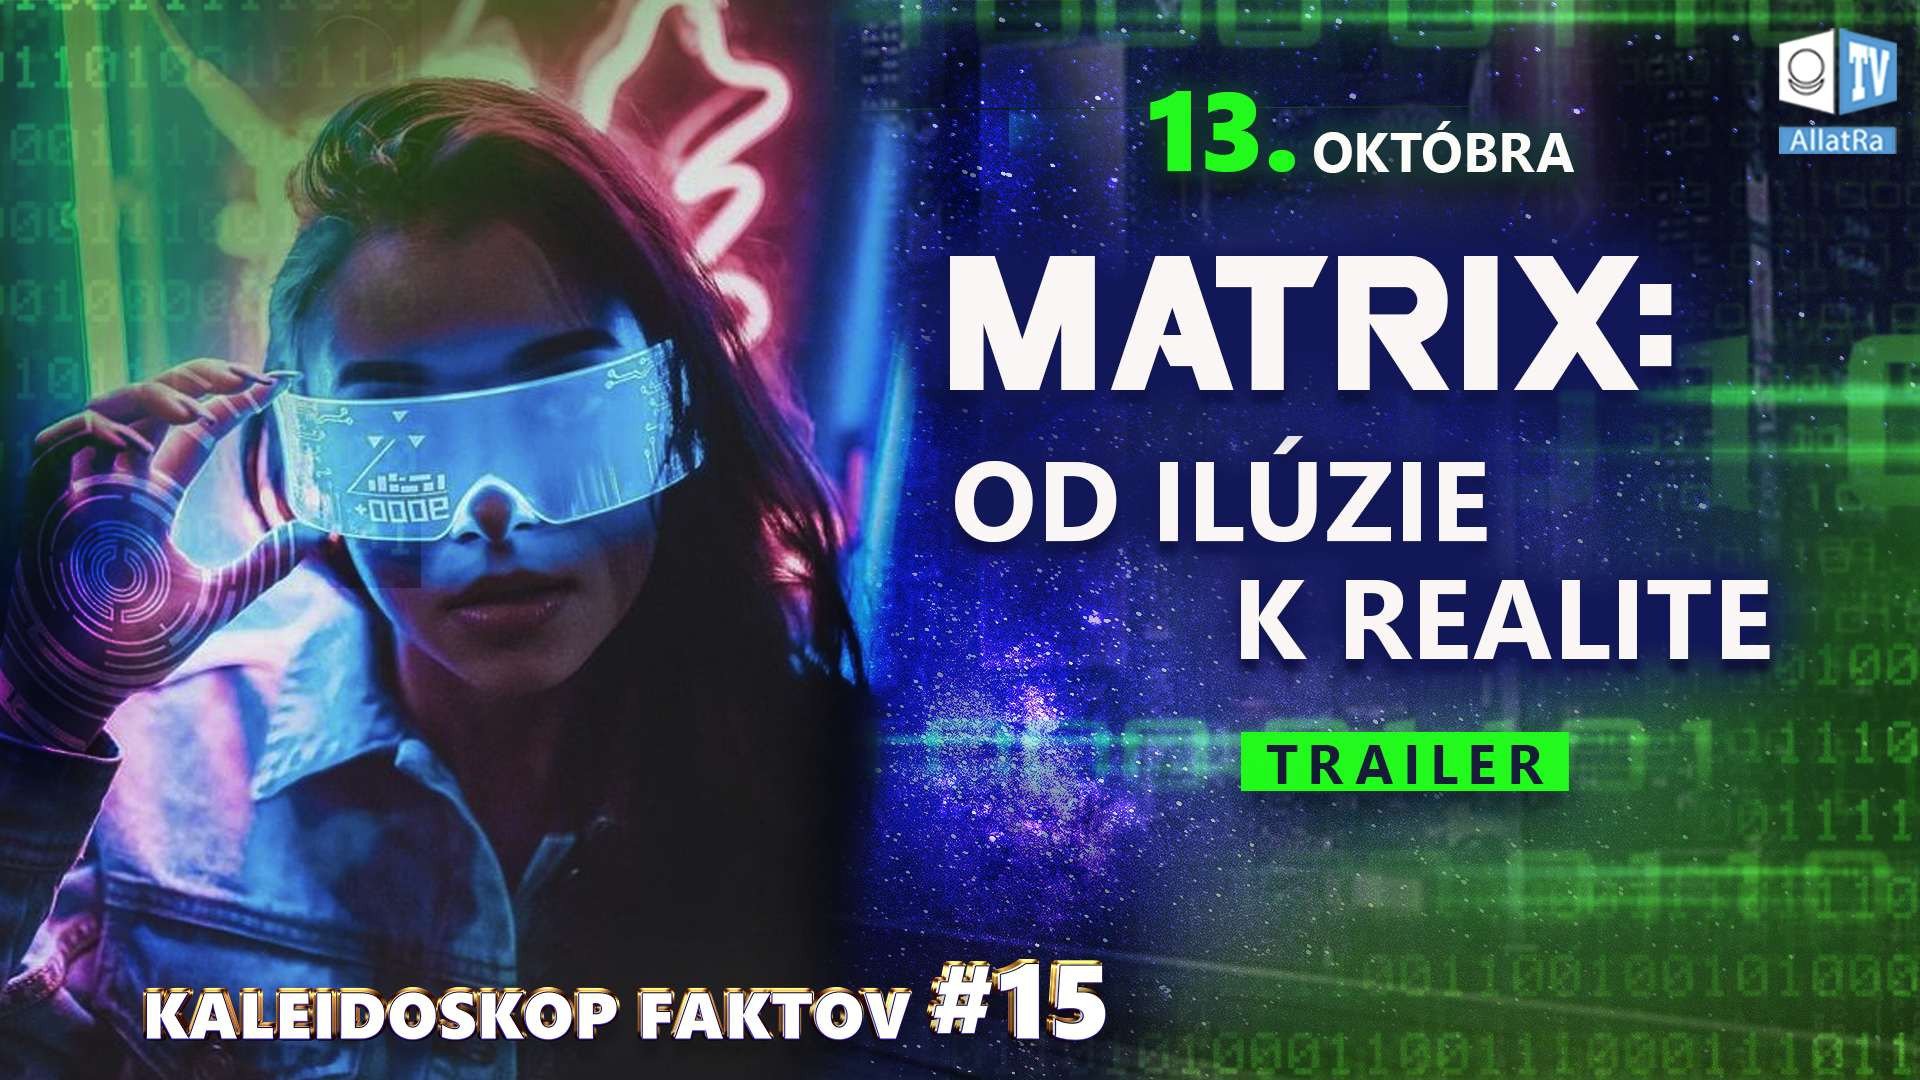 MATRIX: OD ILÚZIE K REALITE | 13.októbra | Trailer. Kaleidoskop faktov 15